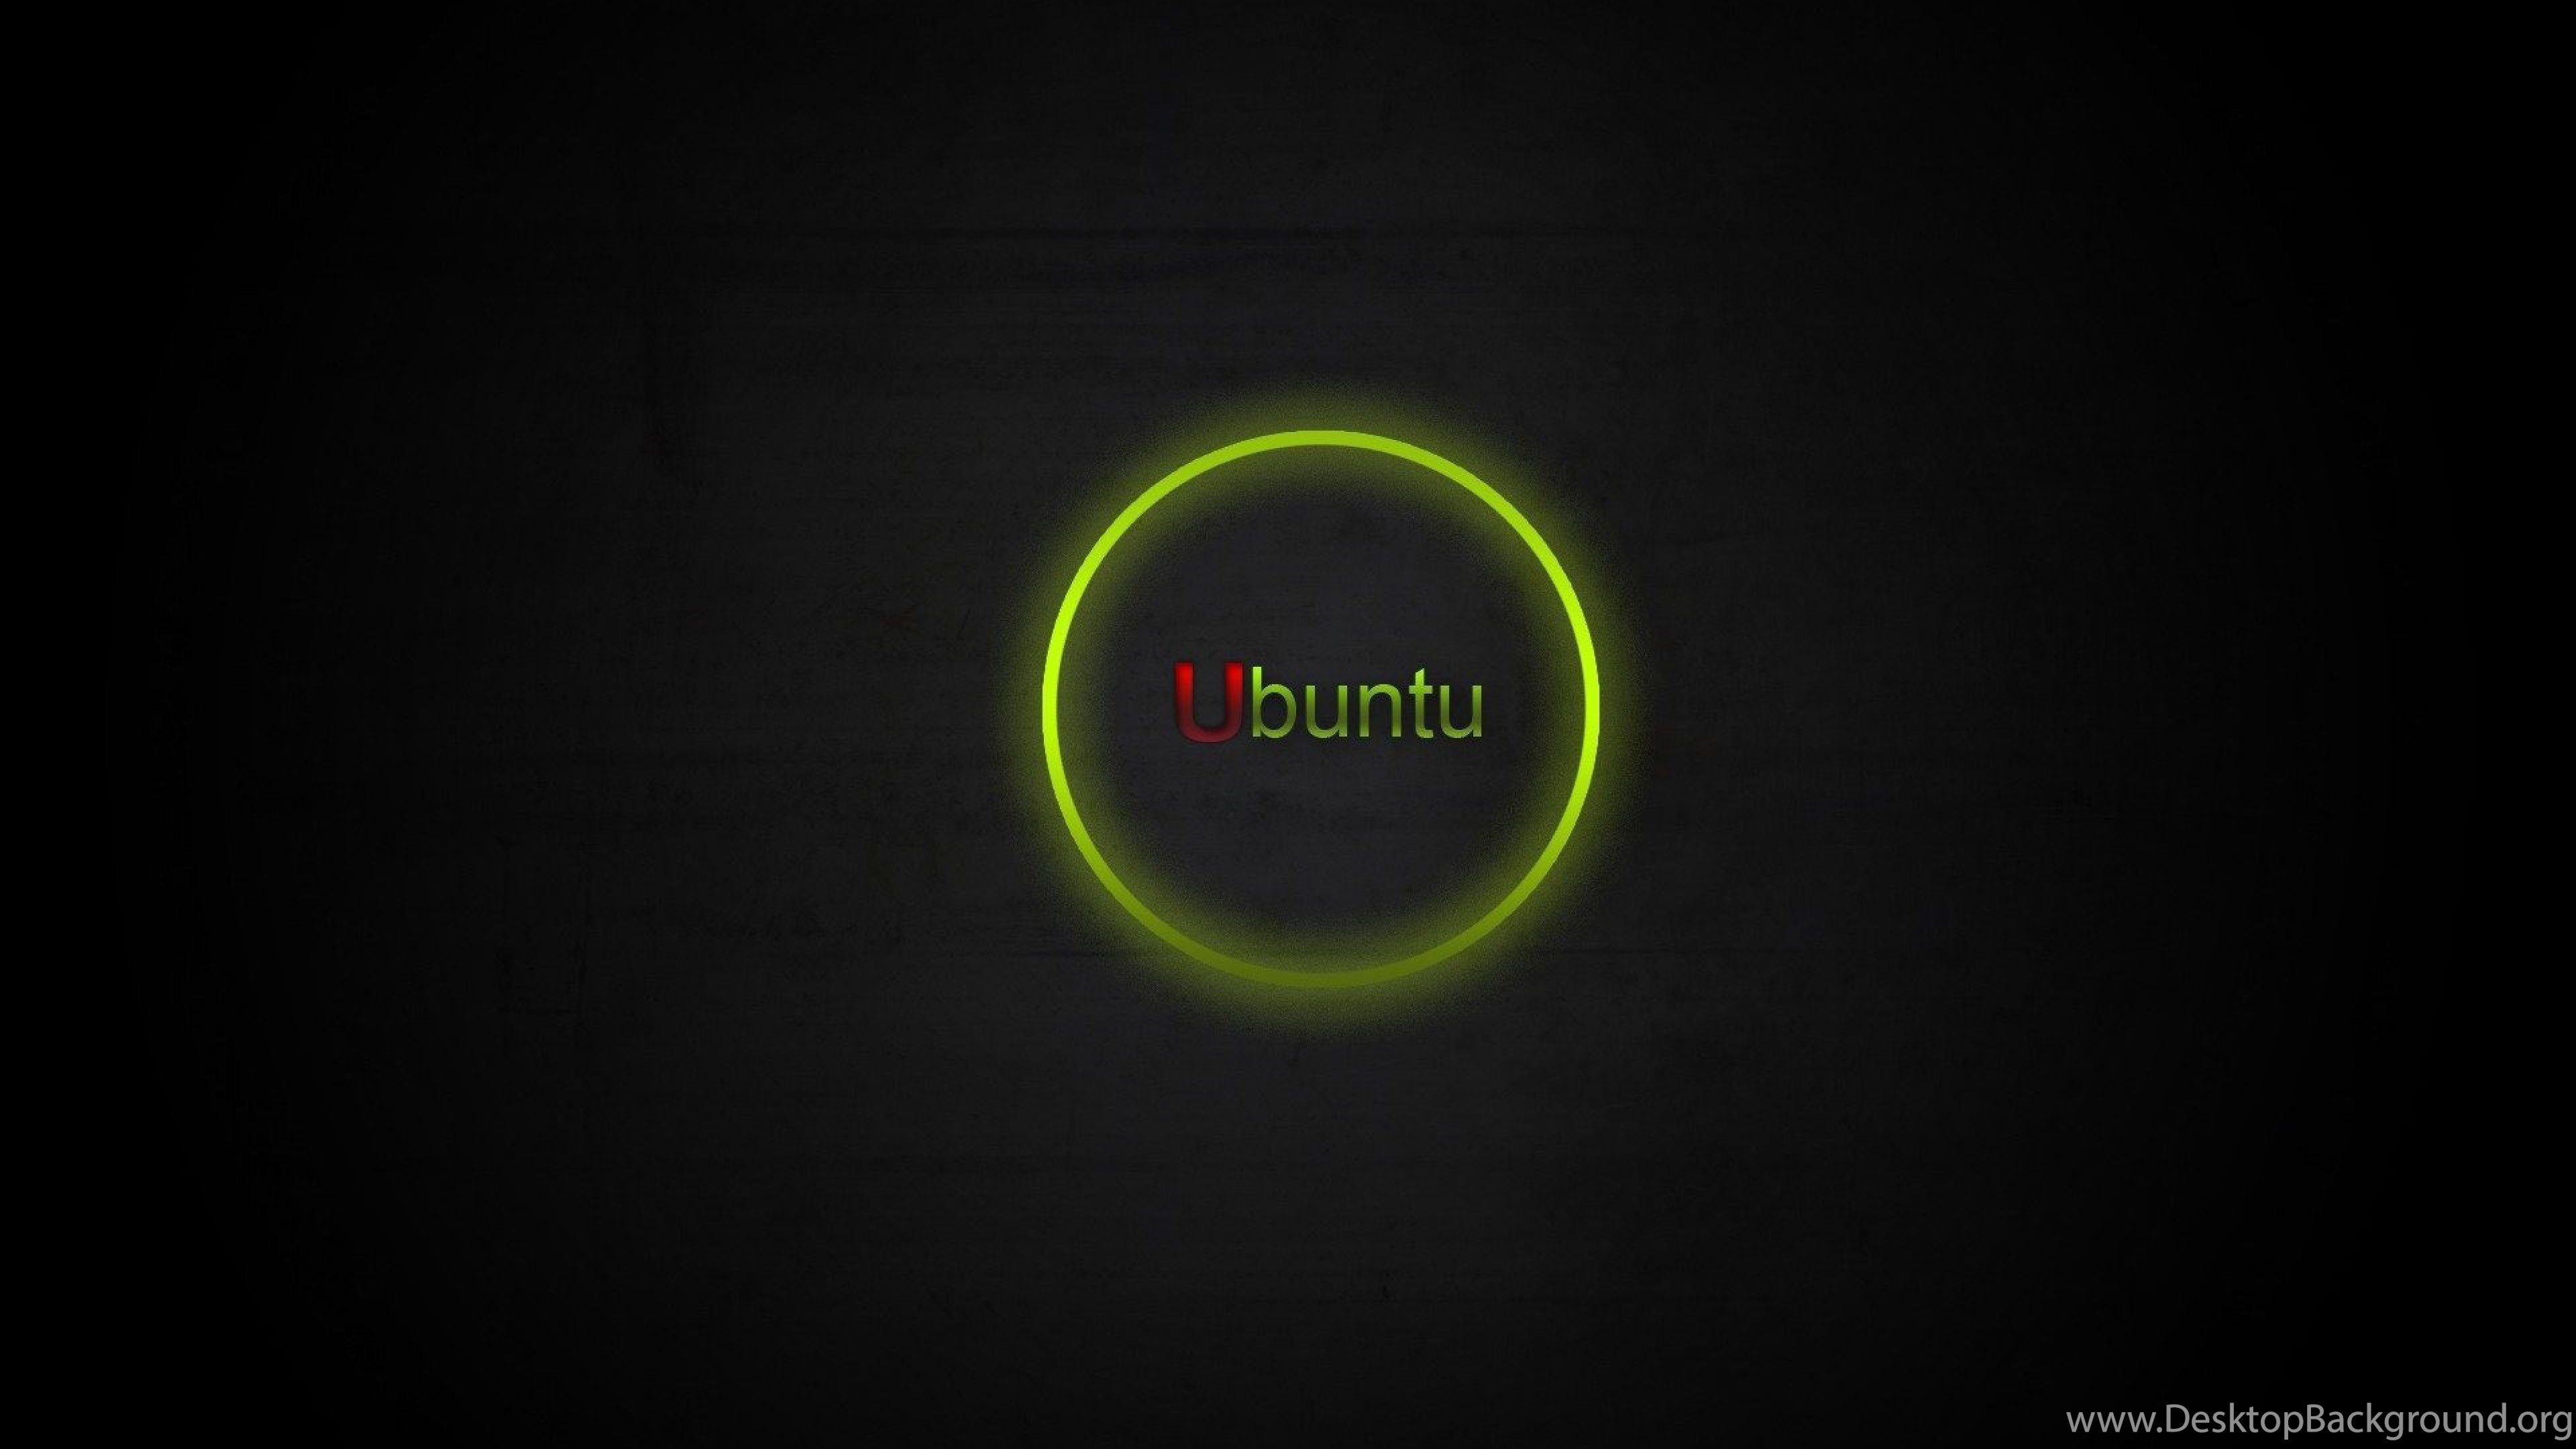 Ubuntu Wallpaper HD 73 images